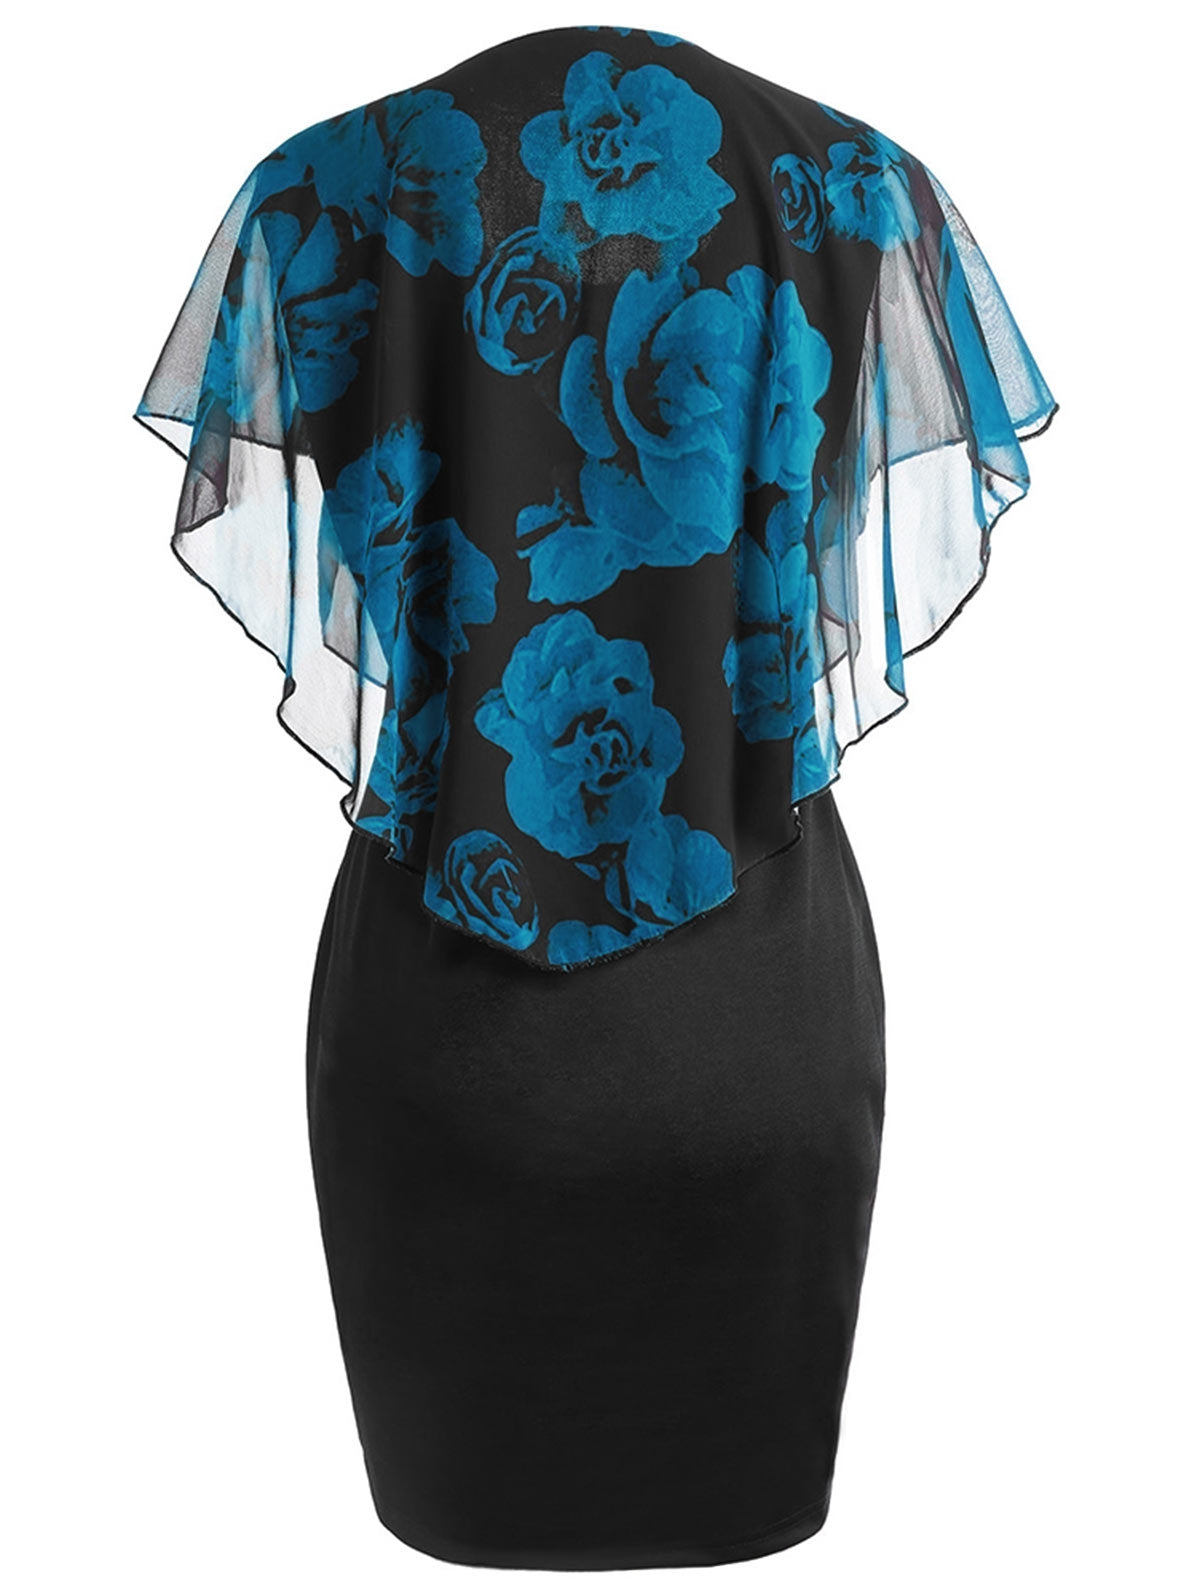 Plus Size Rose Overlay Capelet Dress DromedarShop.com Online Boutique